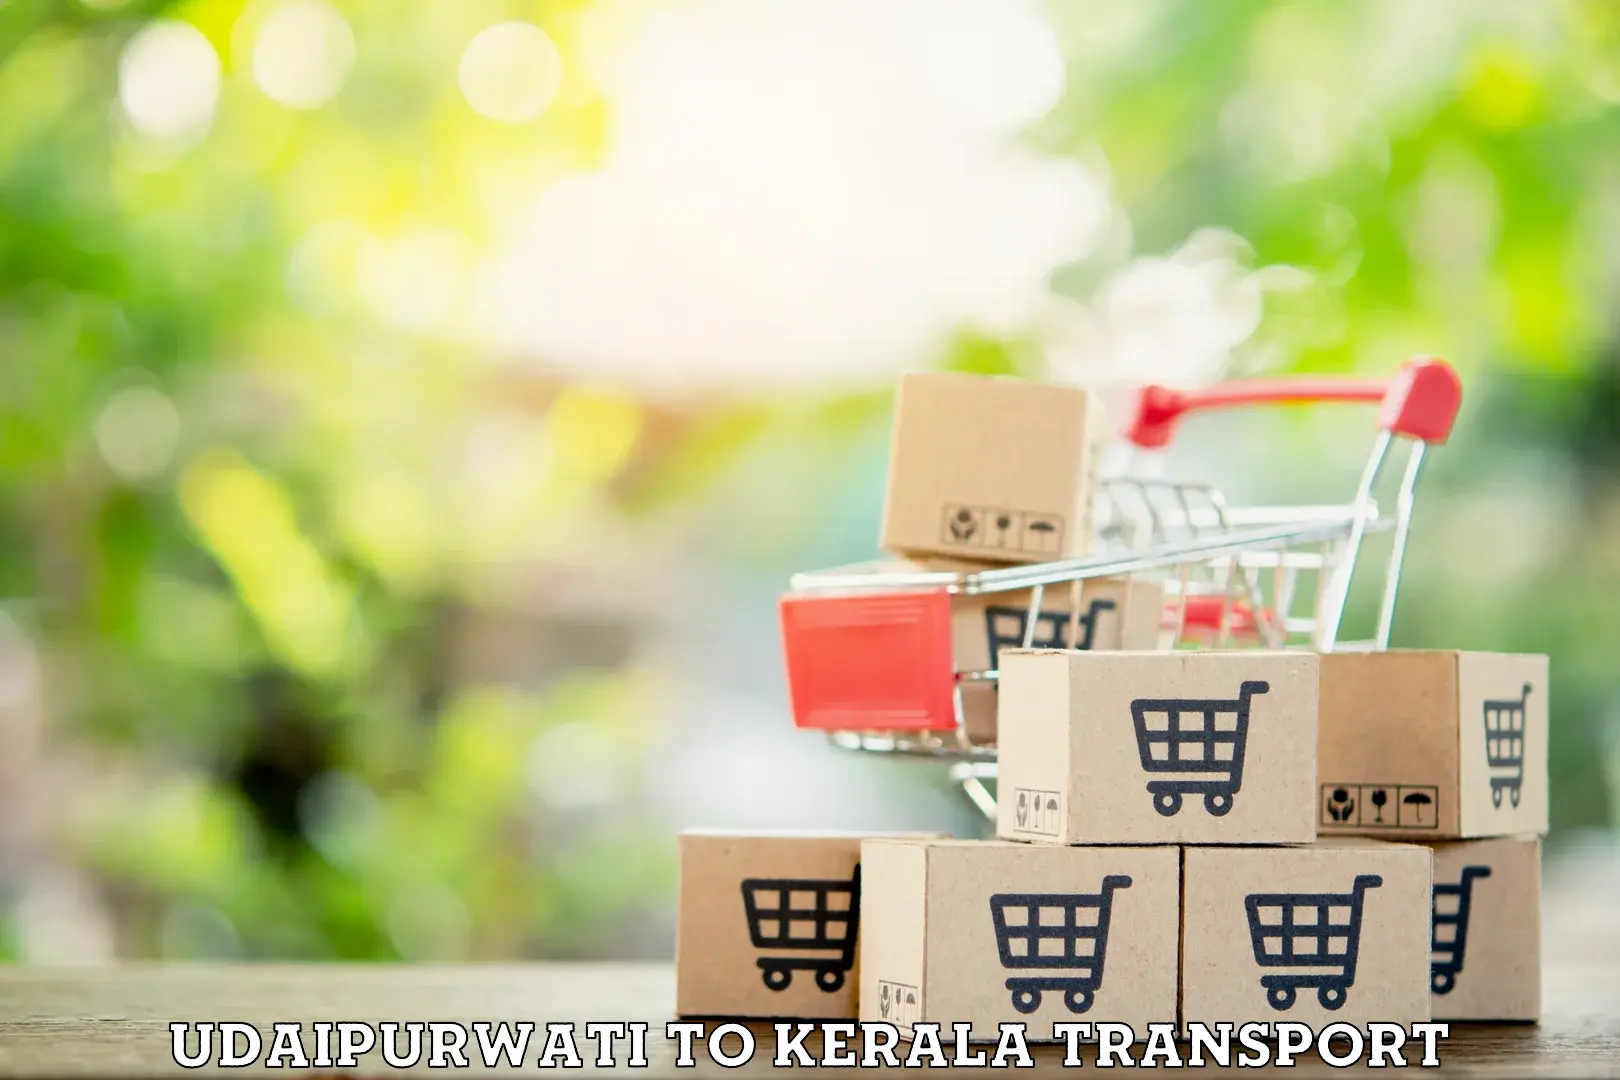 Goods delivery service Udaipurwati to Kalpetta